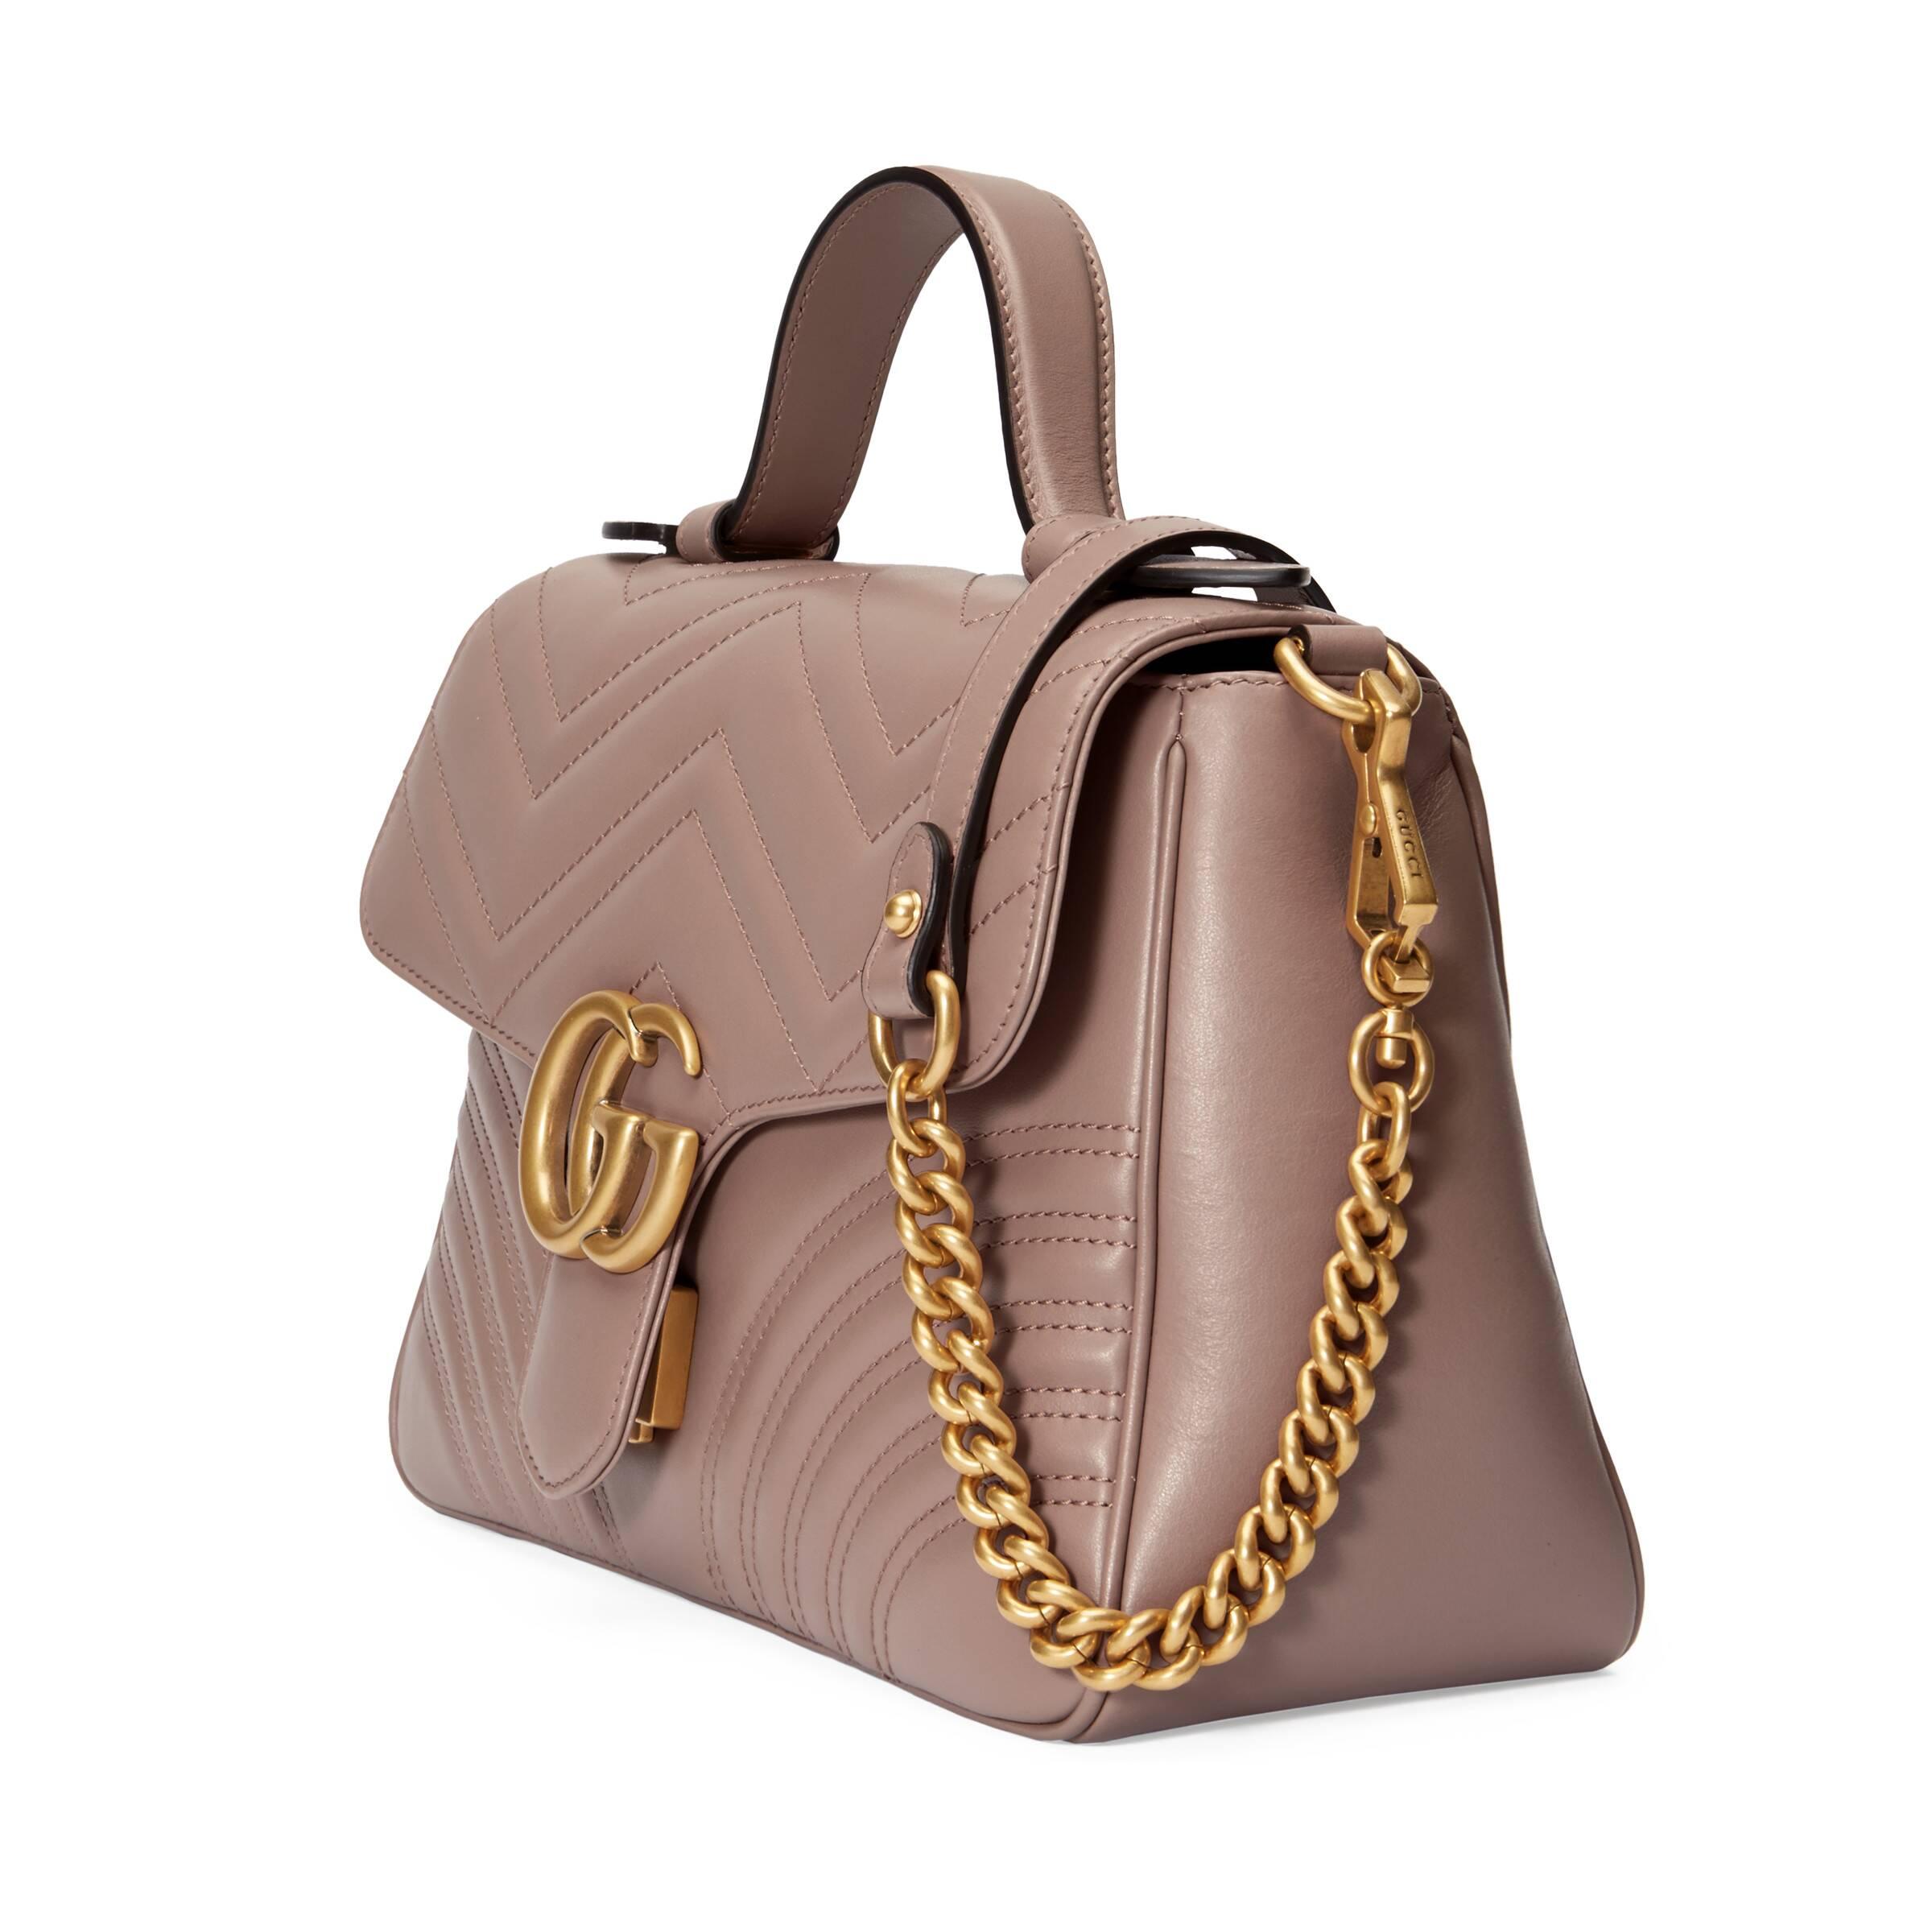 Grisling landdistrikterne til bundet Gucci GG Marmont Small Top Handle Bag in Pink | Lyst